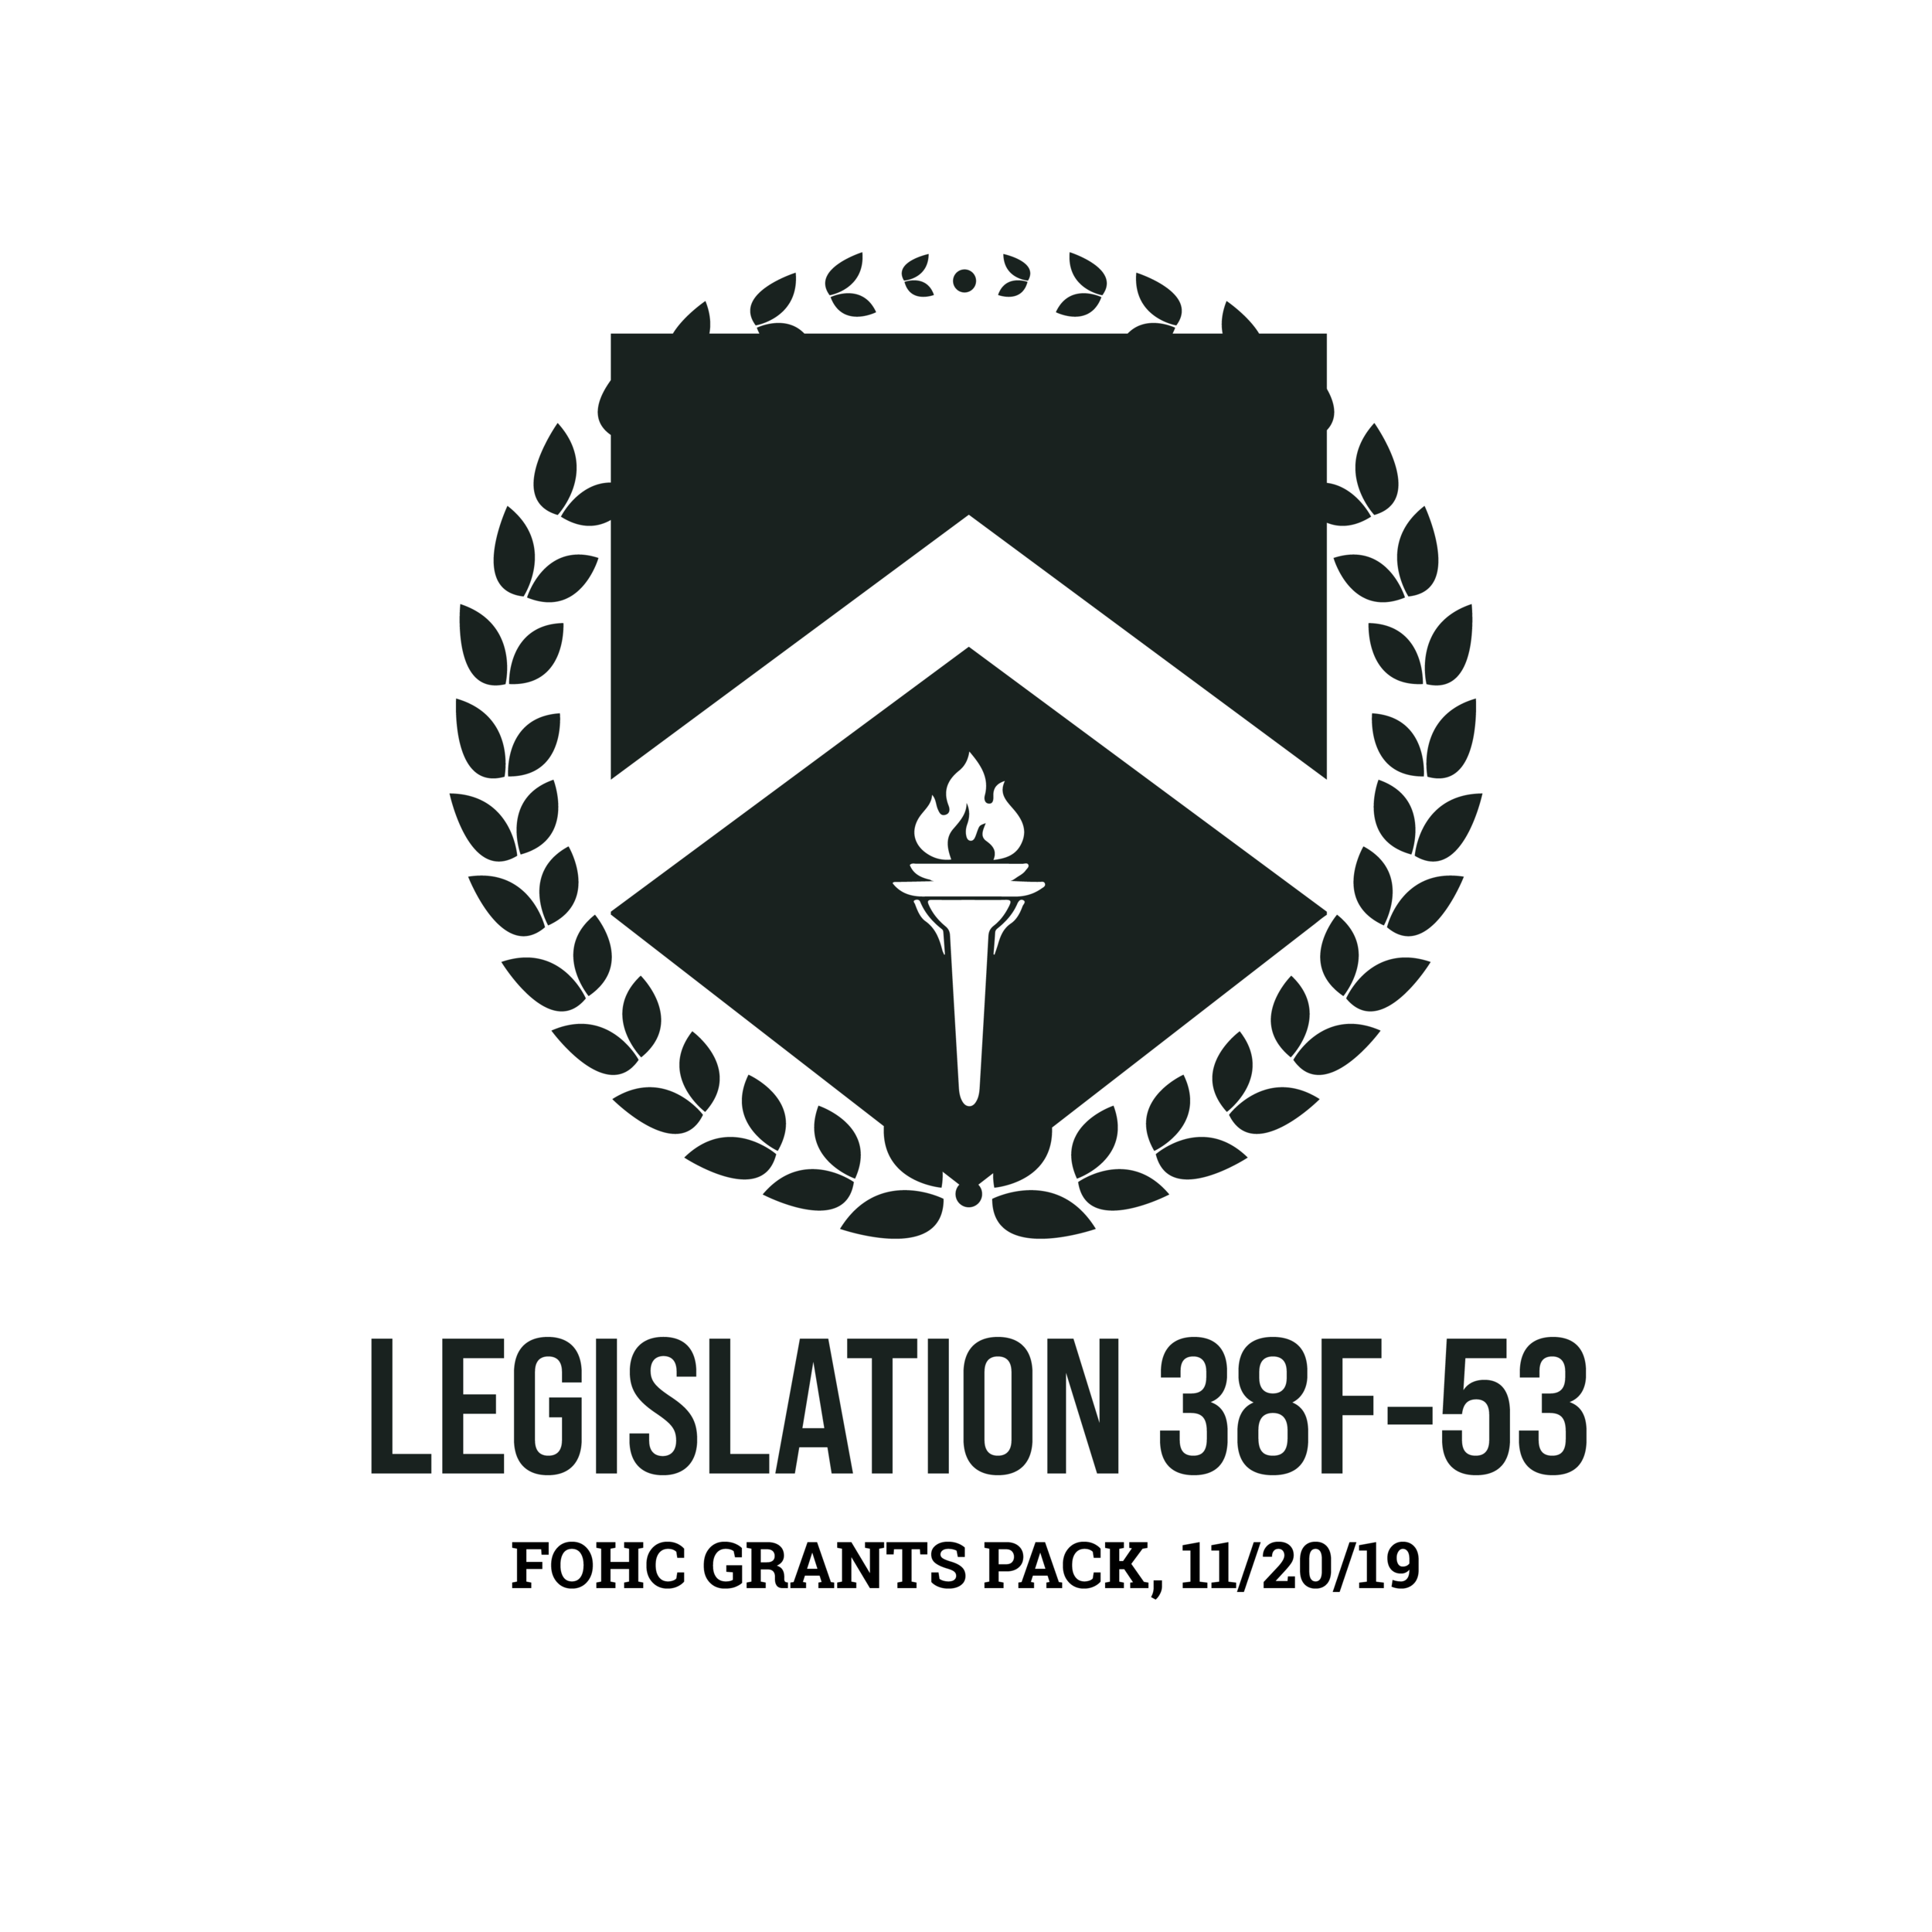 Legislation 38F-53: PASSED